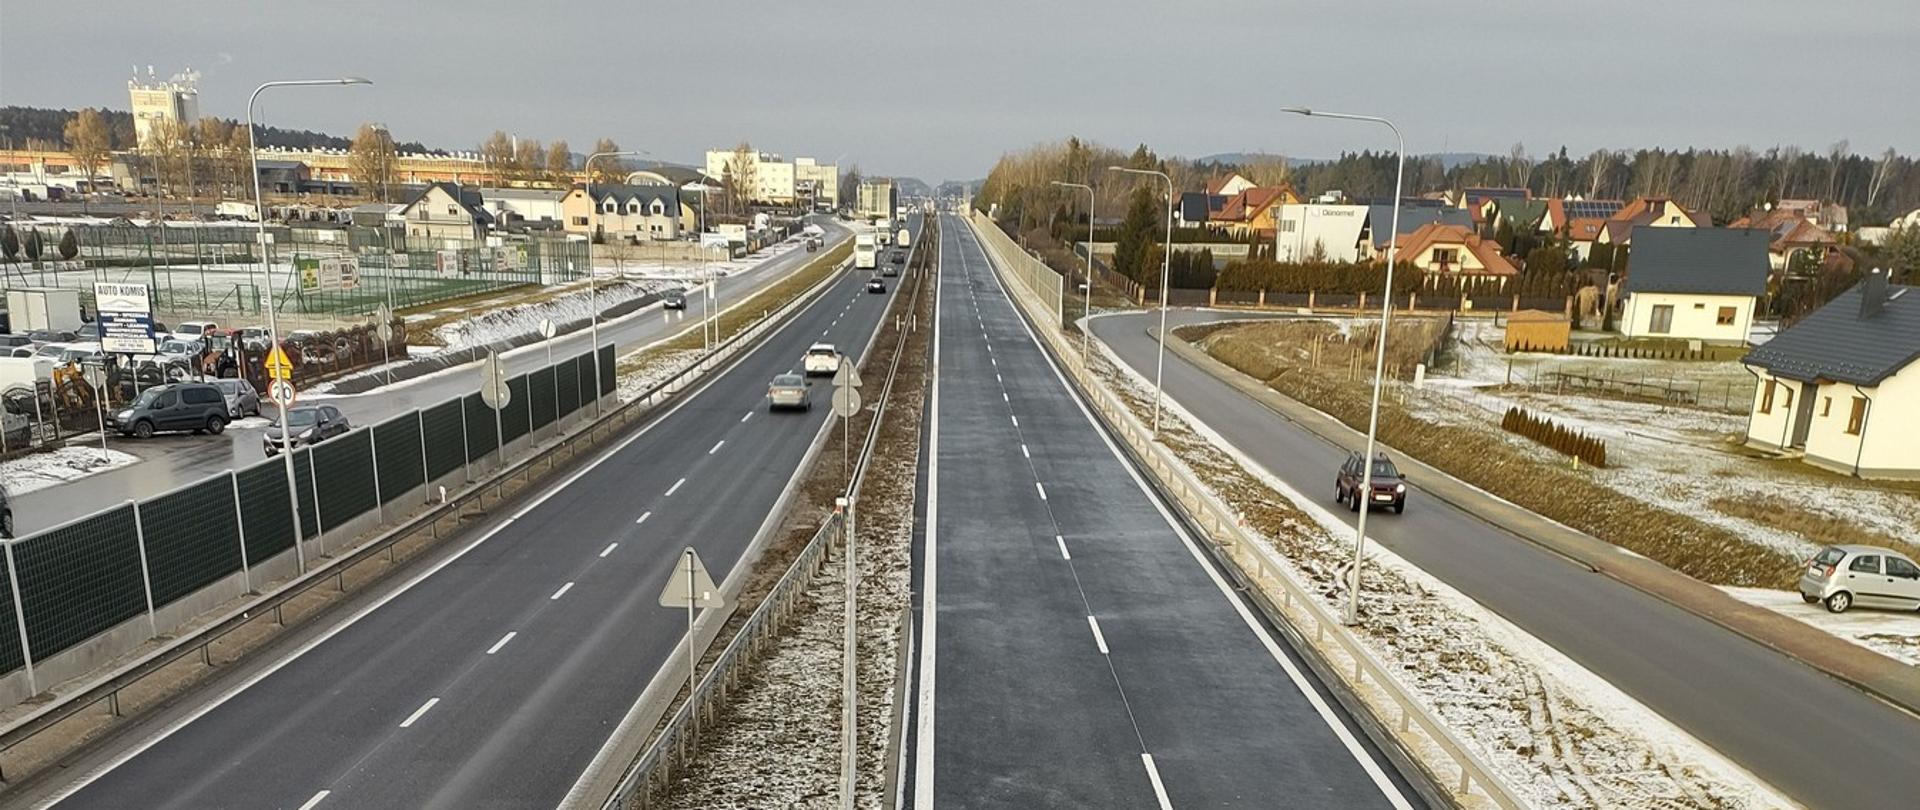 DK73 obwodnica Morawicy - w środku zdjęcia dwujezdniowa droga asfaltowa, po bokach ekrany, drogi dojazdowe, zabudowania 